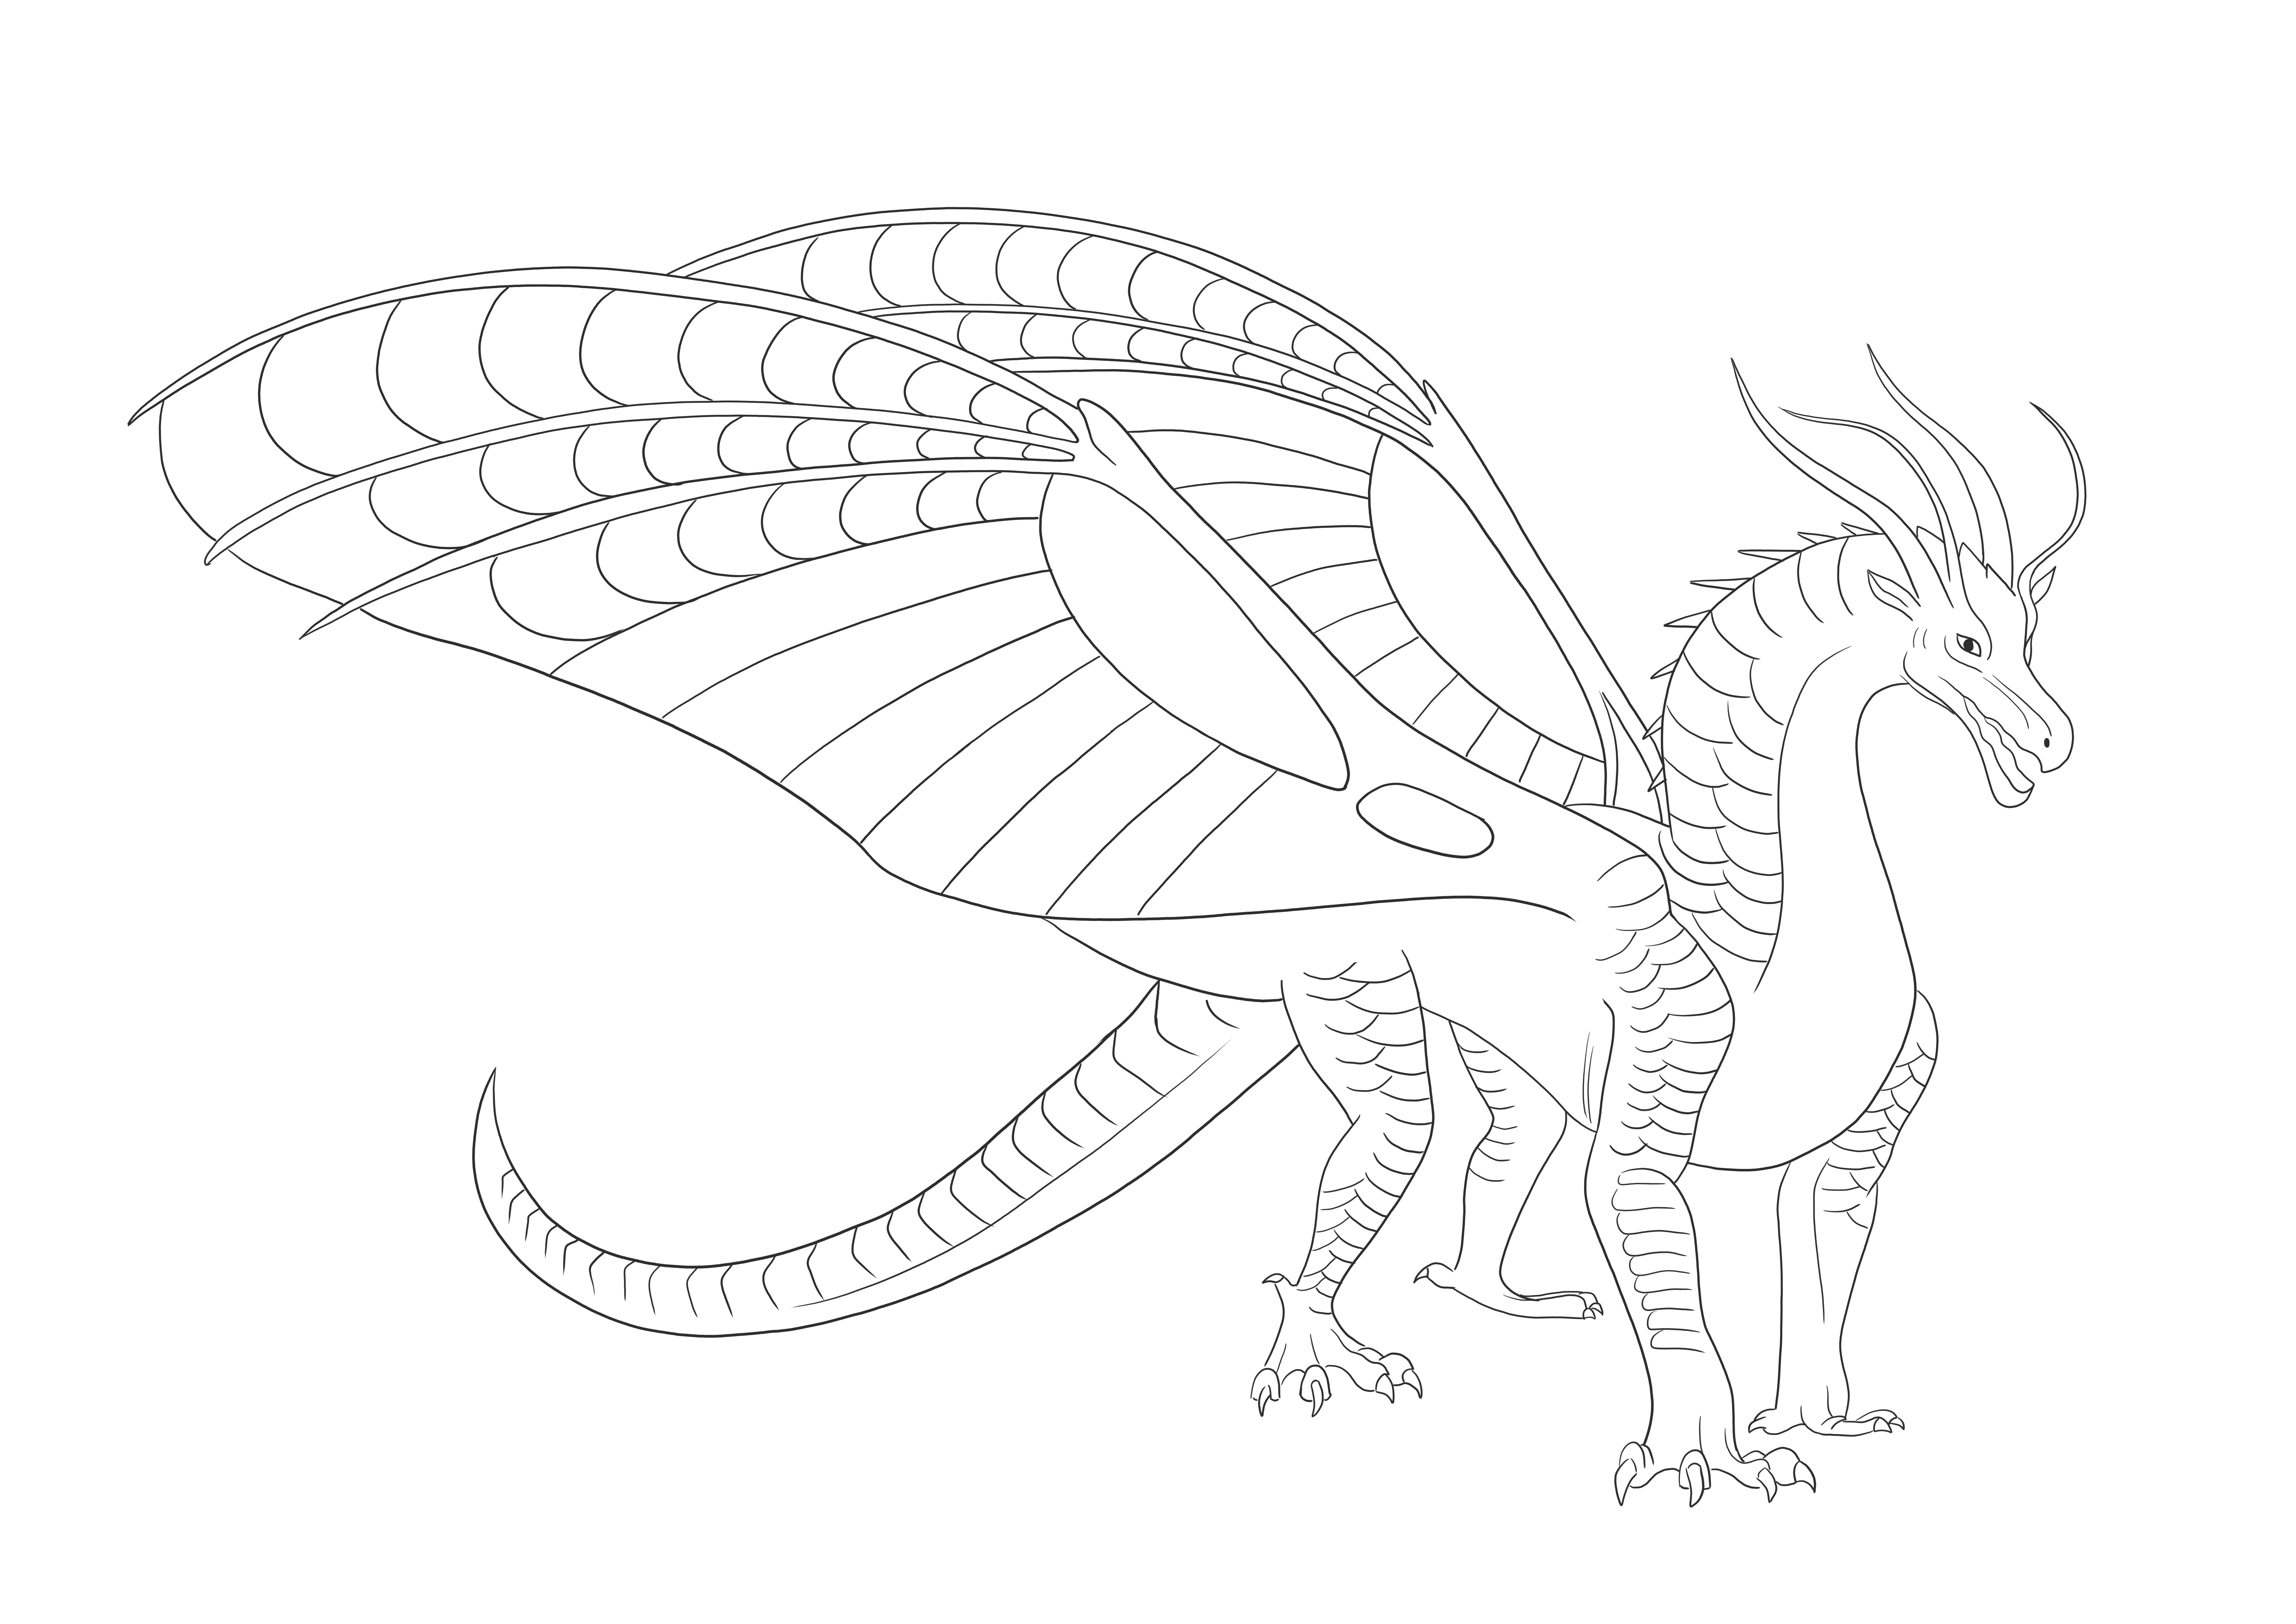 Dragonul Silkwing din aripile de foc liber pentru a imprima și a colora imaginea